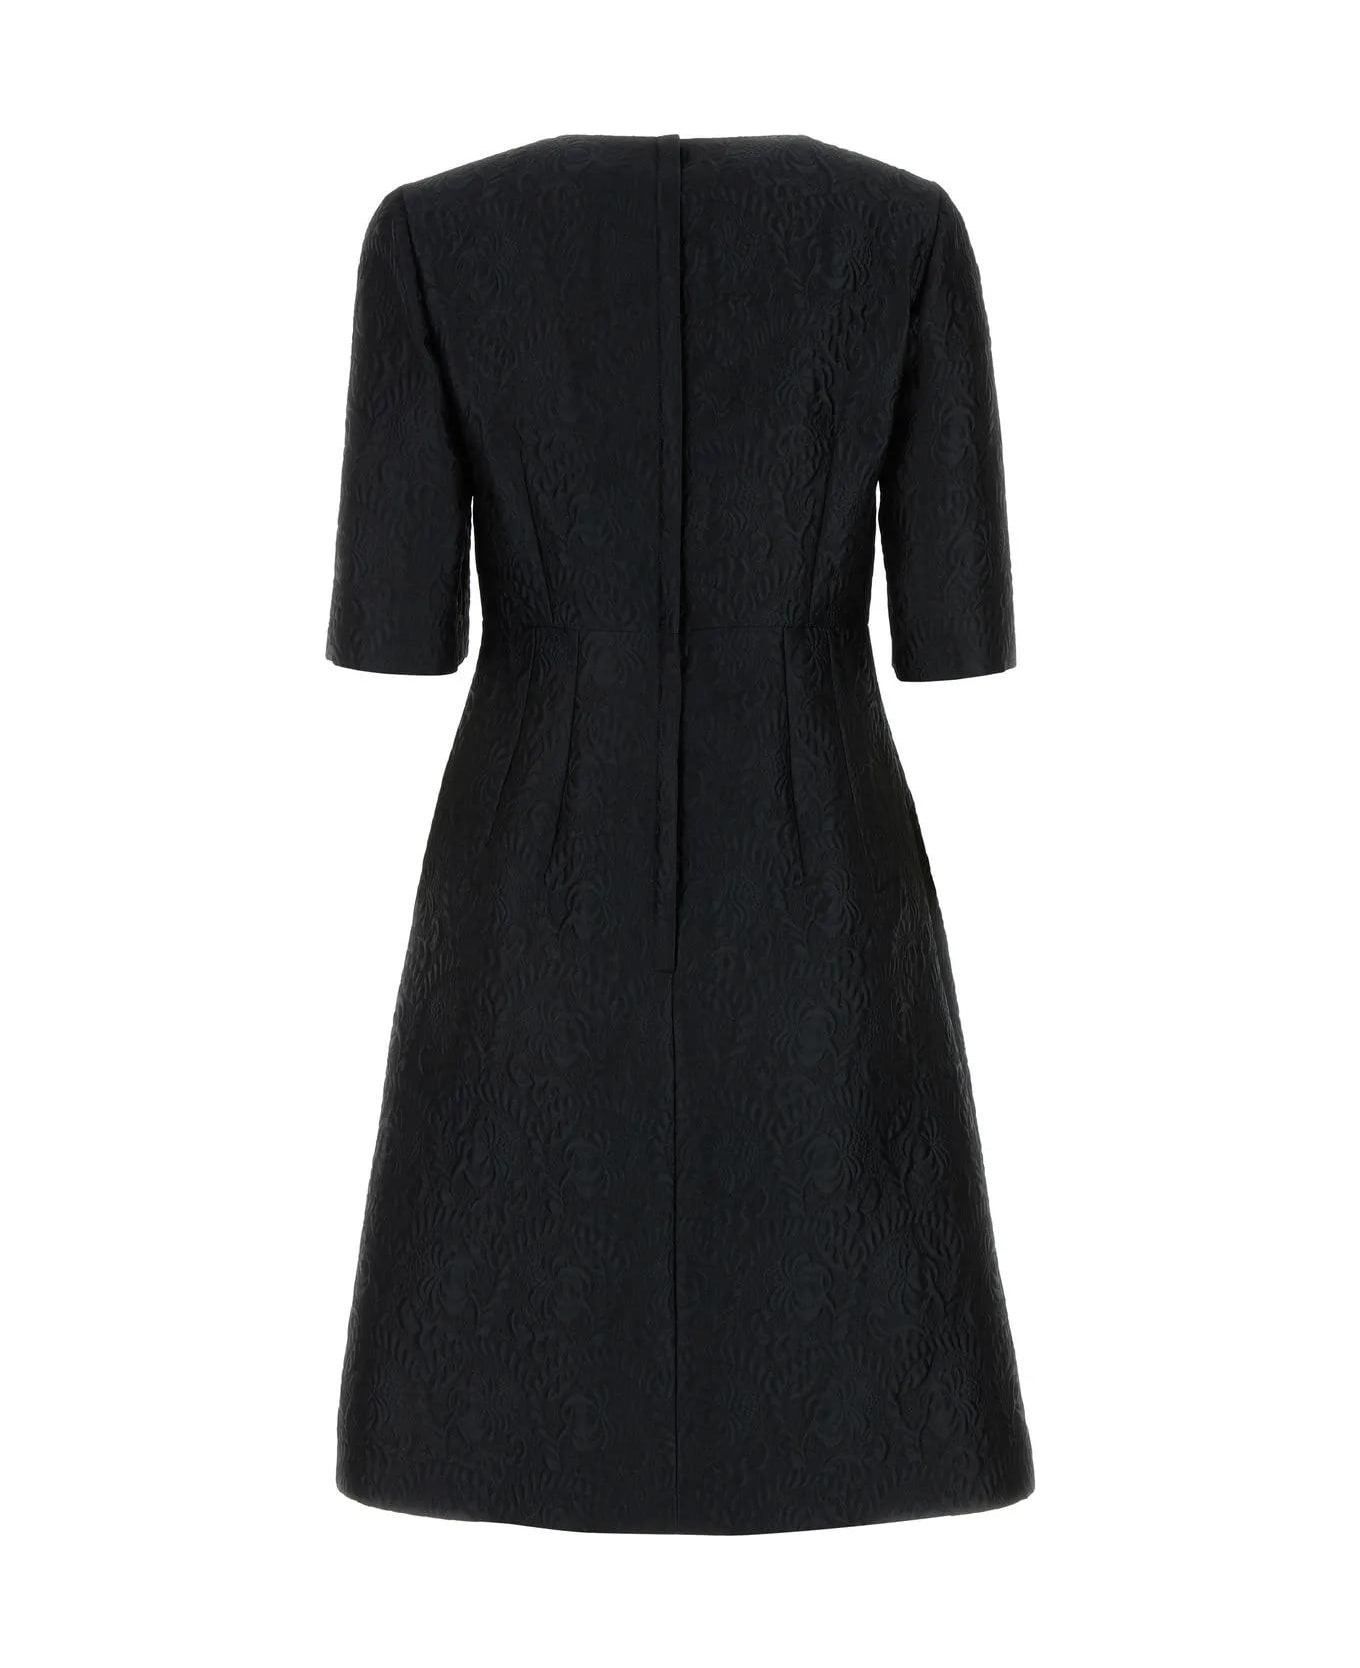 Black Jacquard Dress - 2